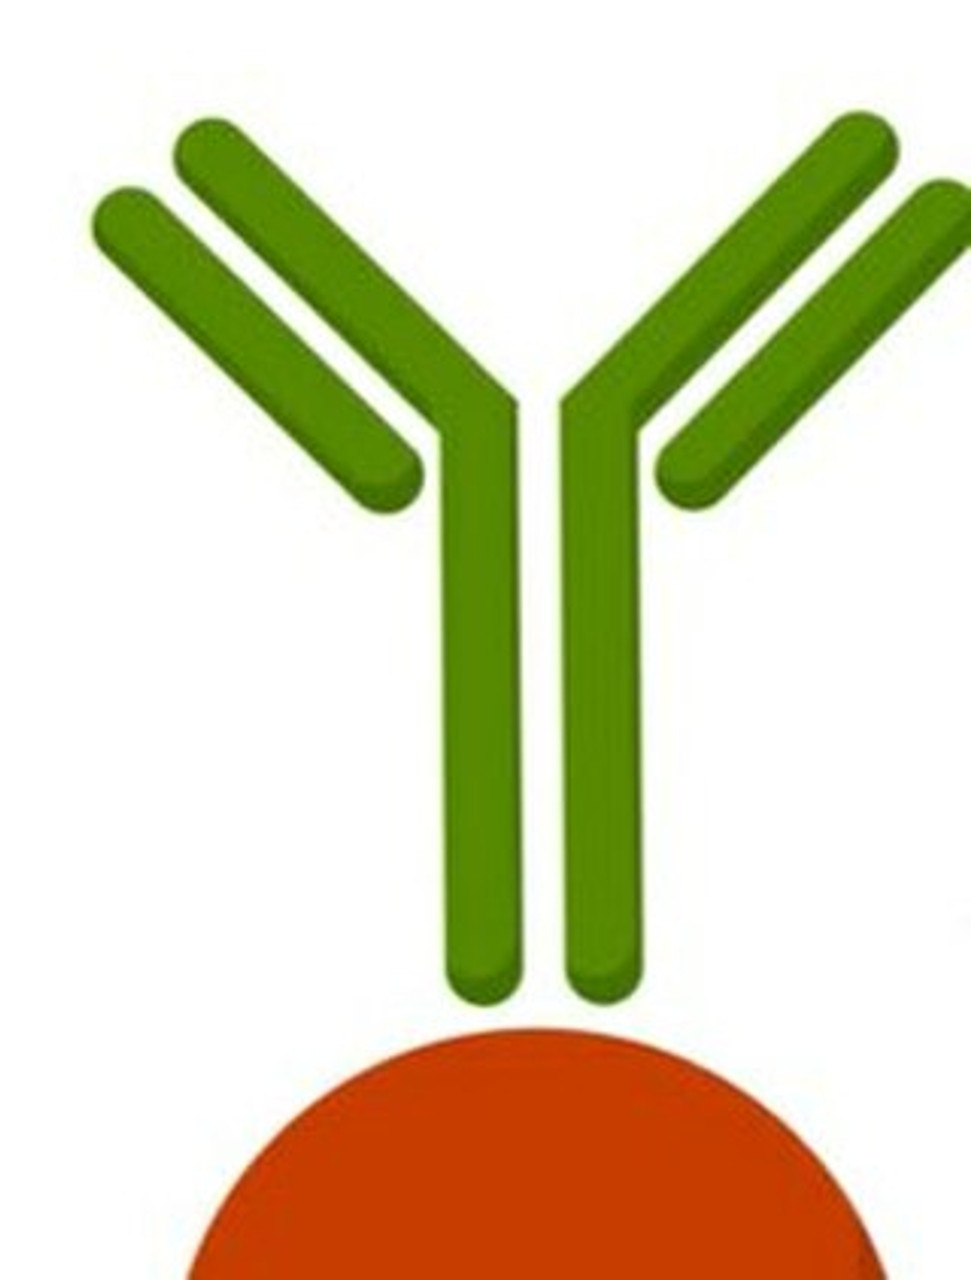 Anti-ACPT antibody